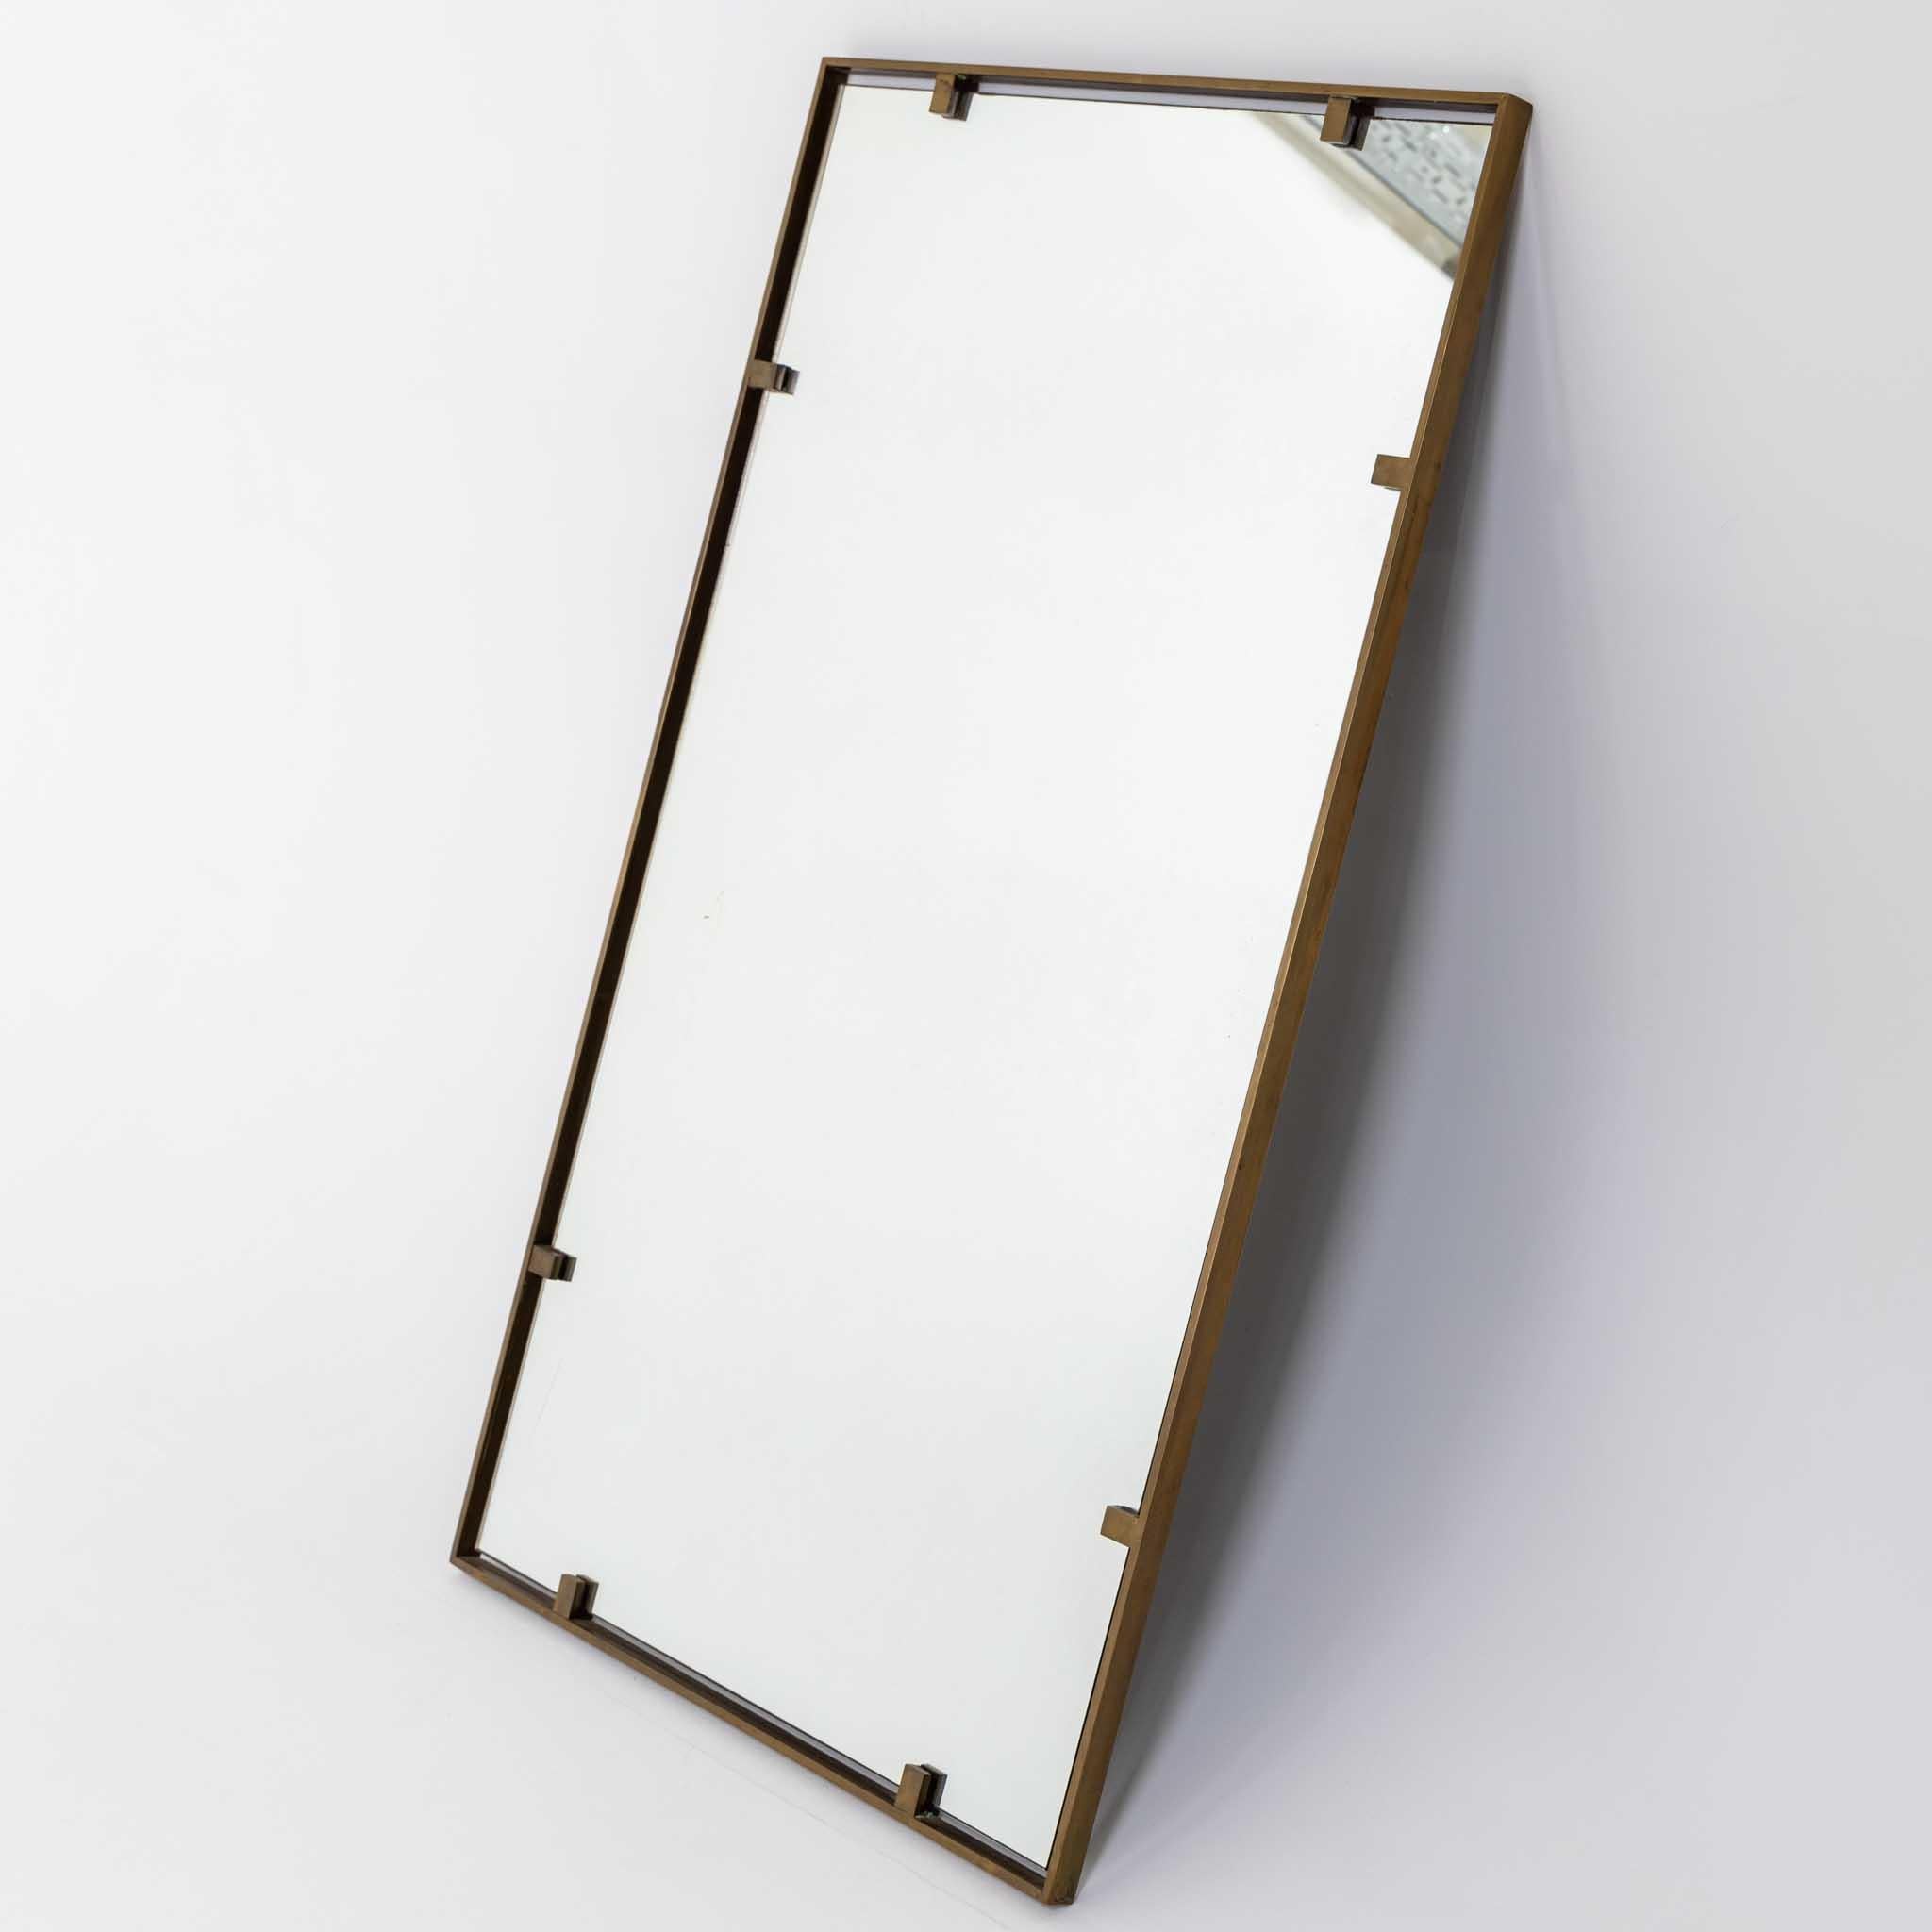 Miroir rectangulaire décoratif moderniste italien.

Cadre solide en laiton patiné avec verre miroir d'origine. 

Le miroir est fixé à l'aide d'équerres pour donner un effet flottant.